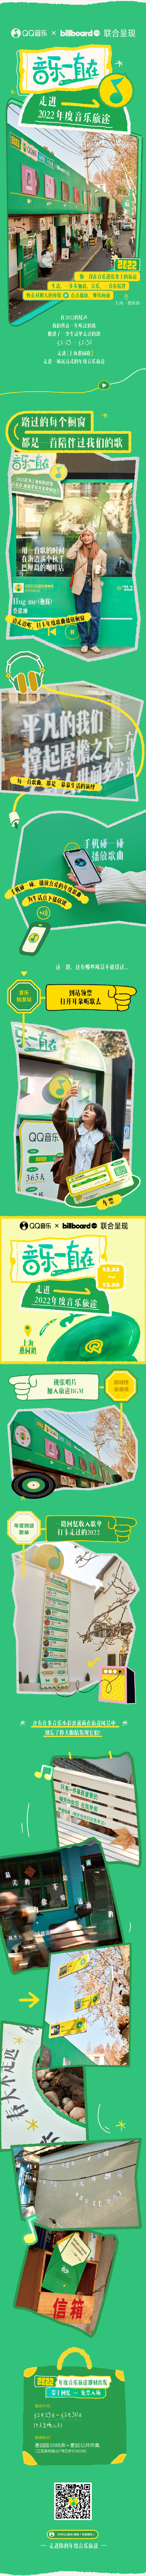 QQ 音乐发布「 2022 年度听歌报告」